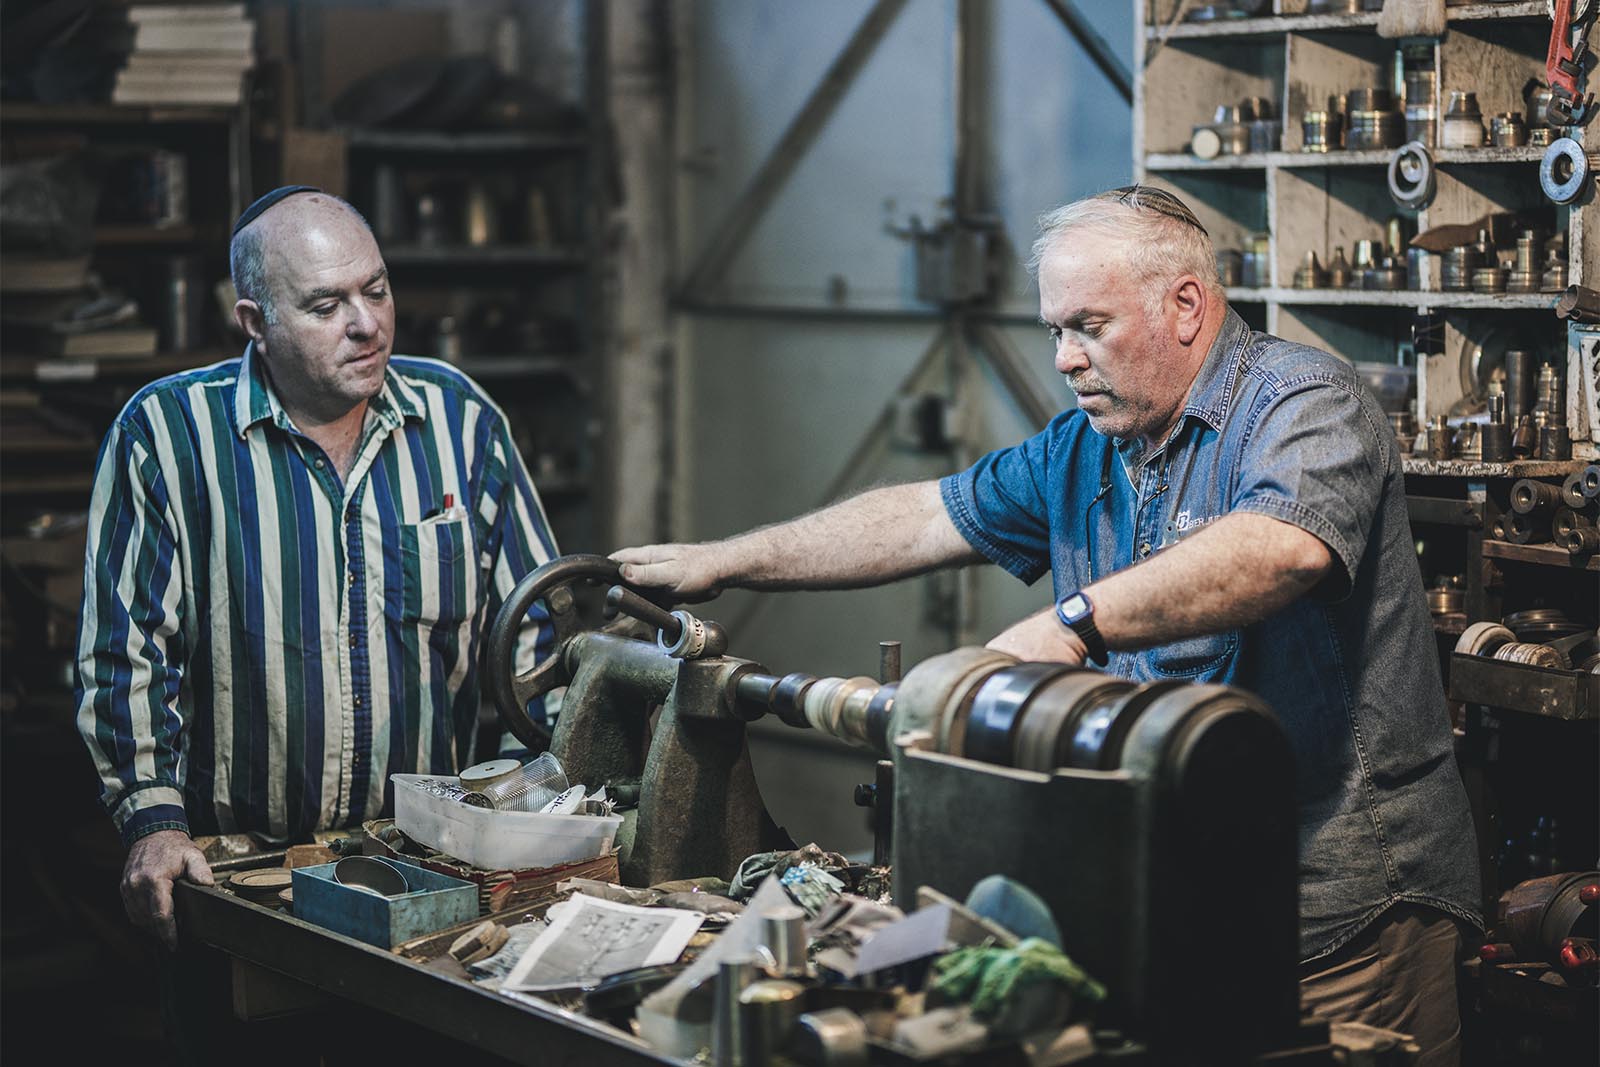 האחים מרדכי ומאיר ביר, נכנסו לעבוד עם אביהם במפעל בשנות ה-80 וממשיכים את העסק המשפחתי (צילום: מפעלי ביר)